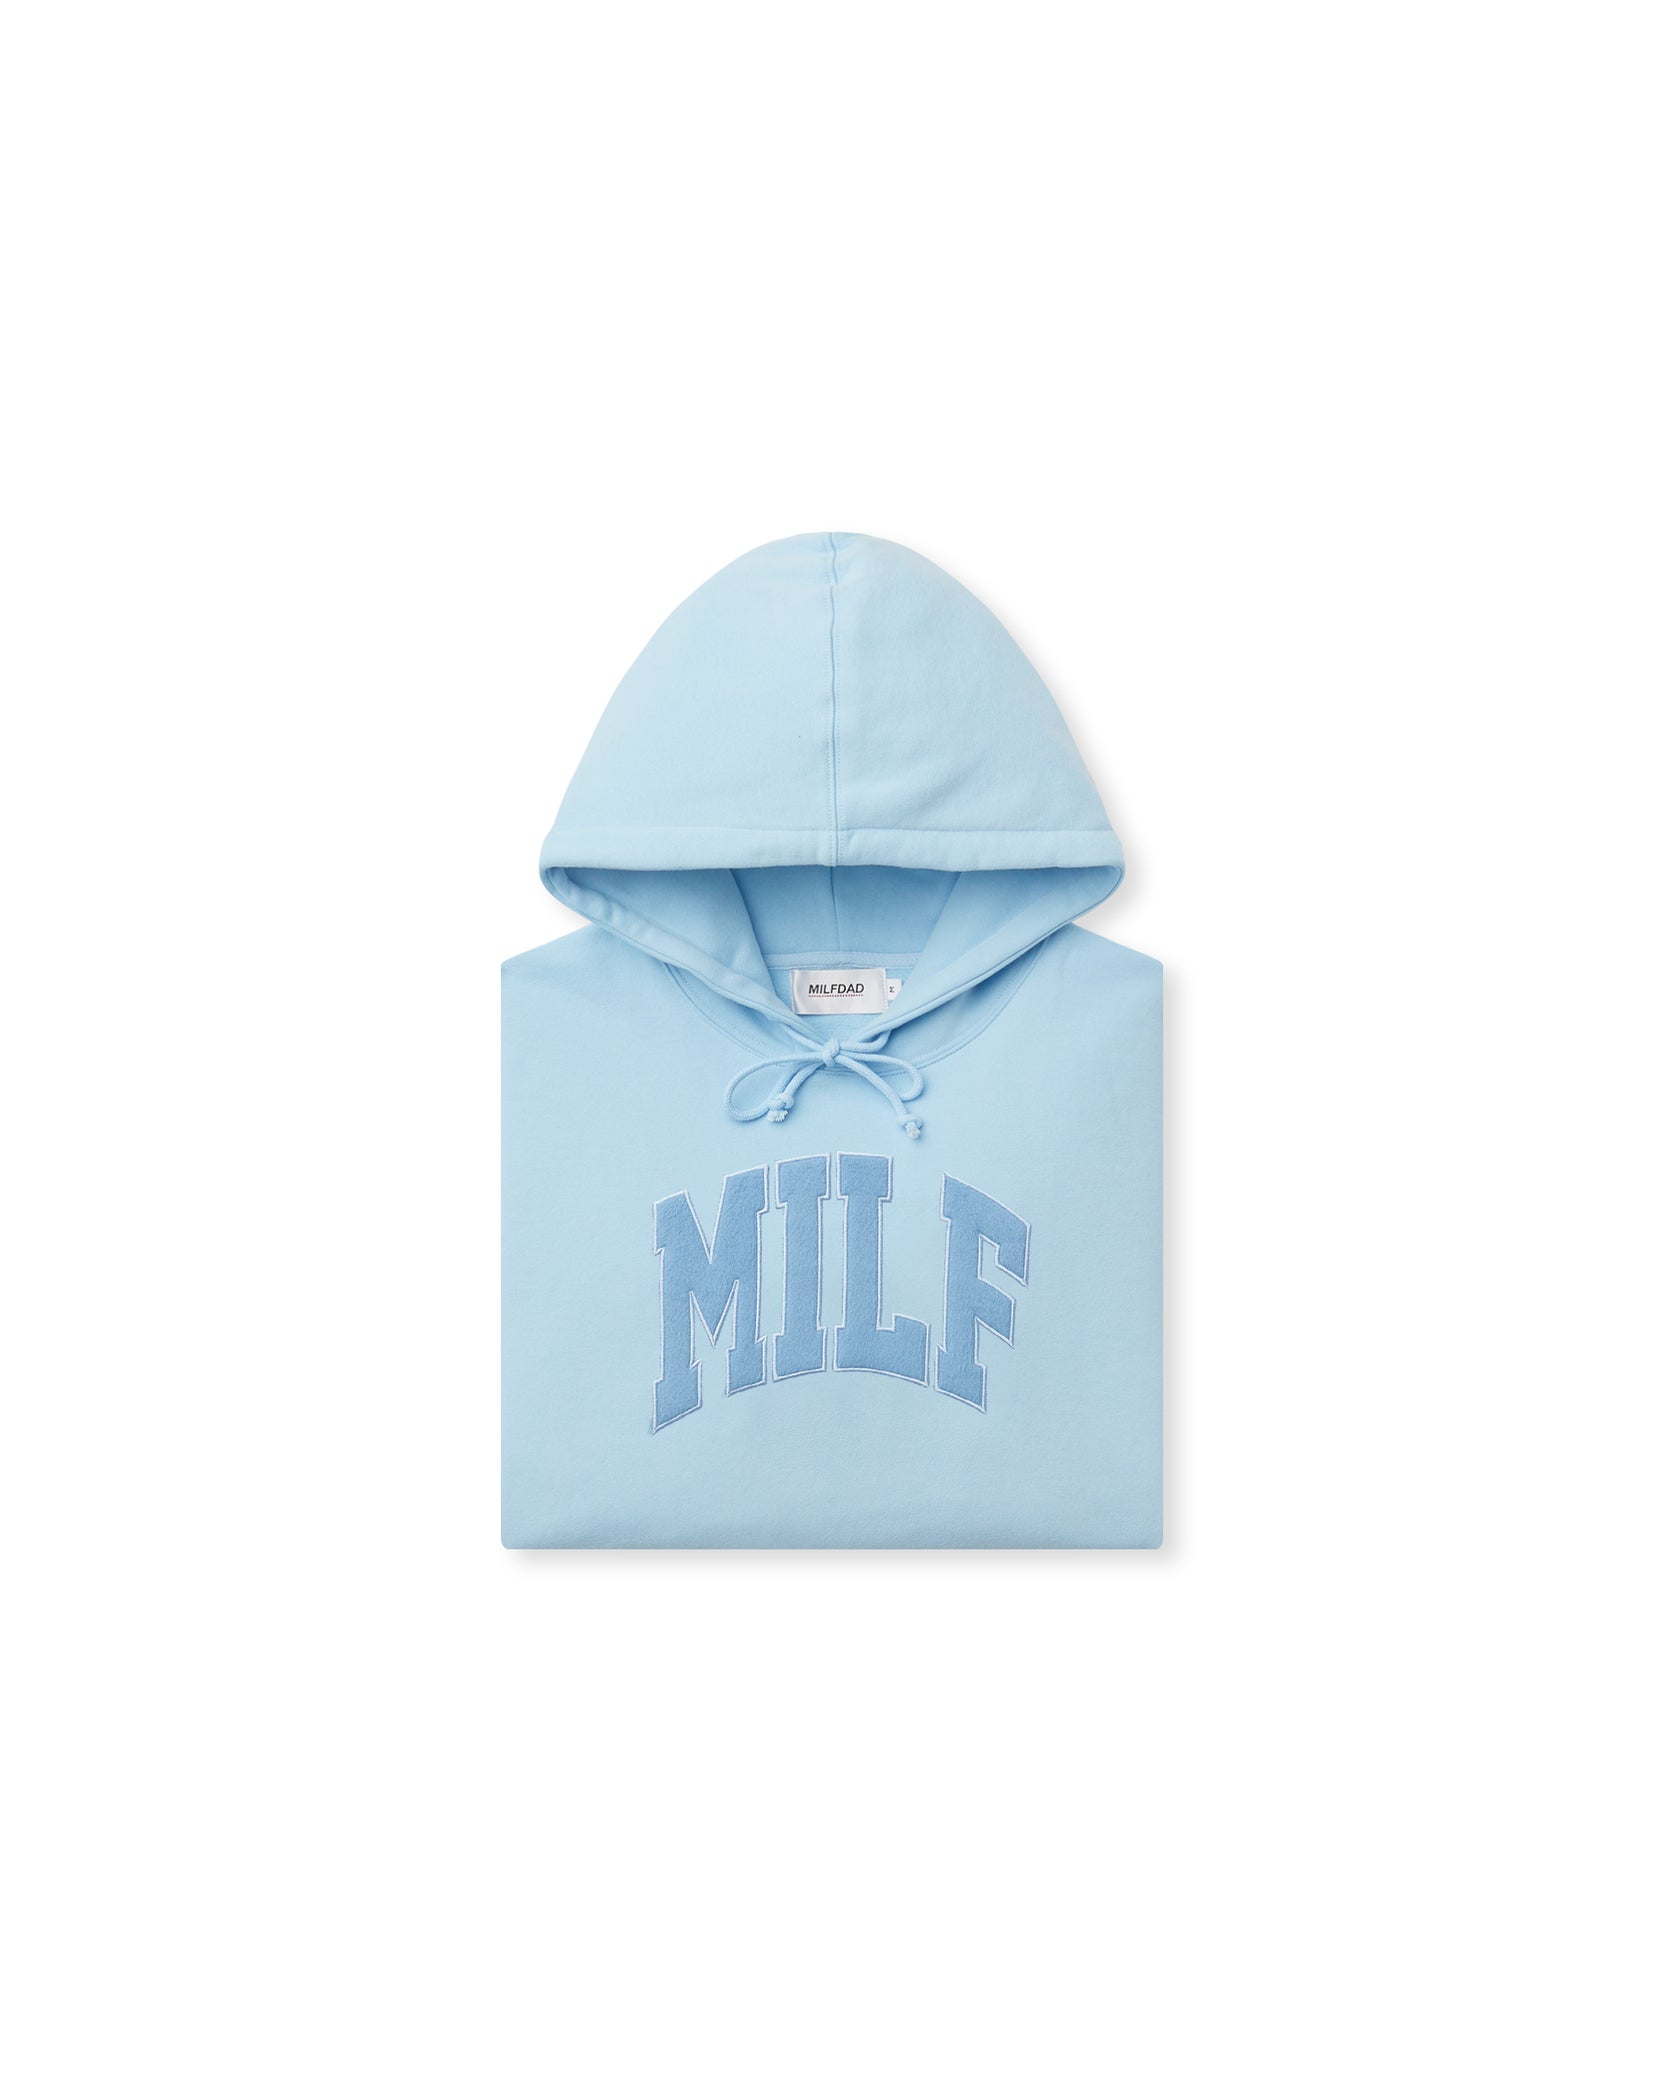 MILF Arc Logo Hoodie - Baby Blue